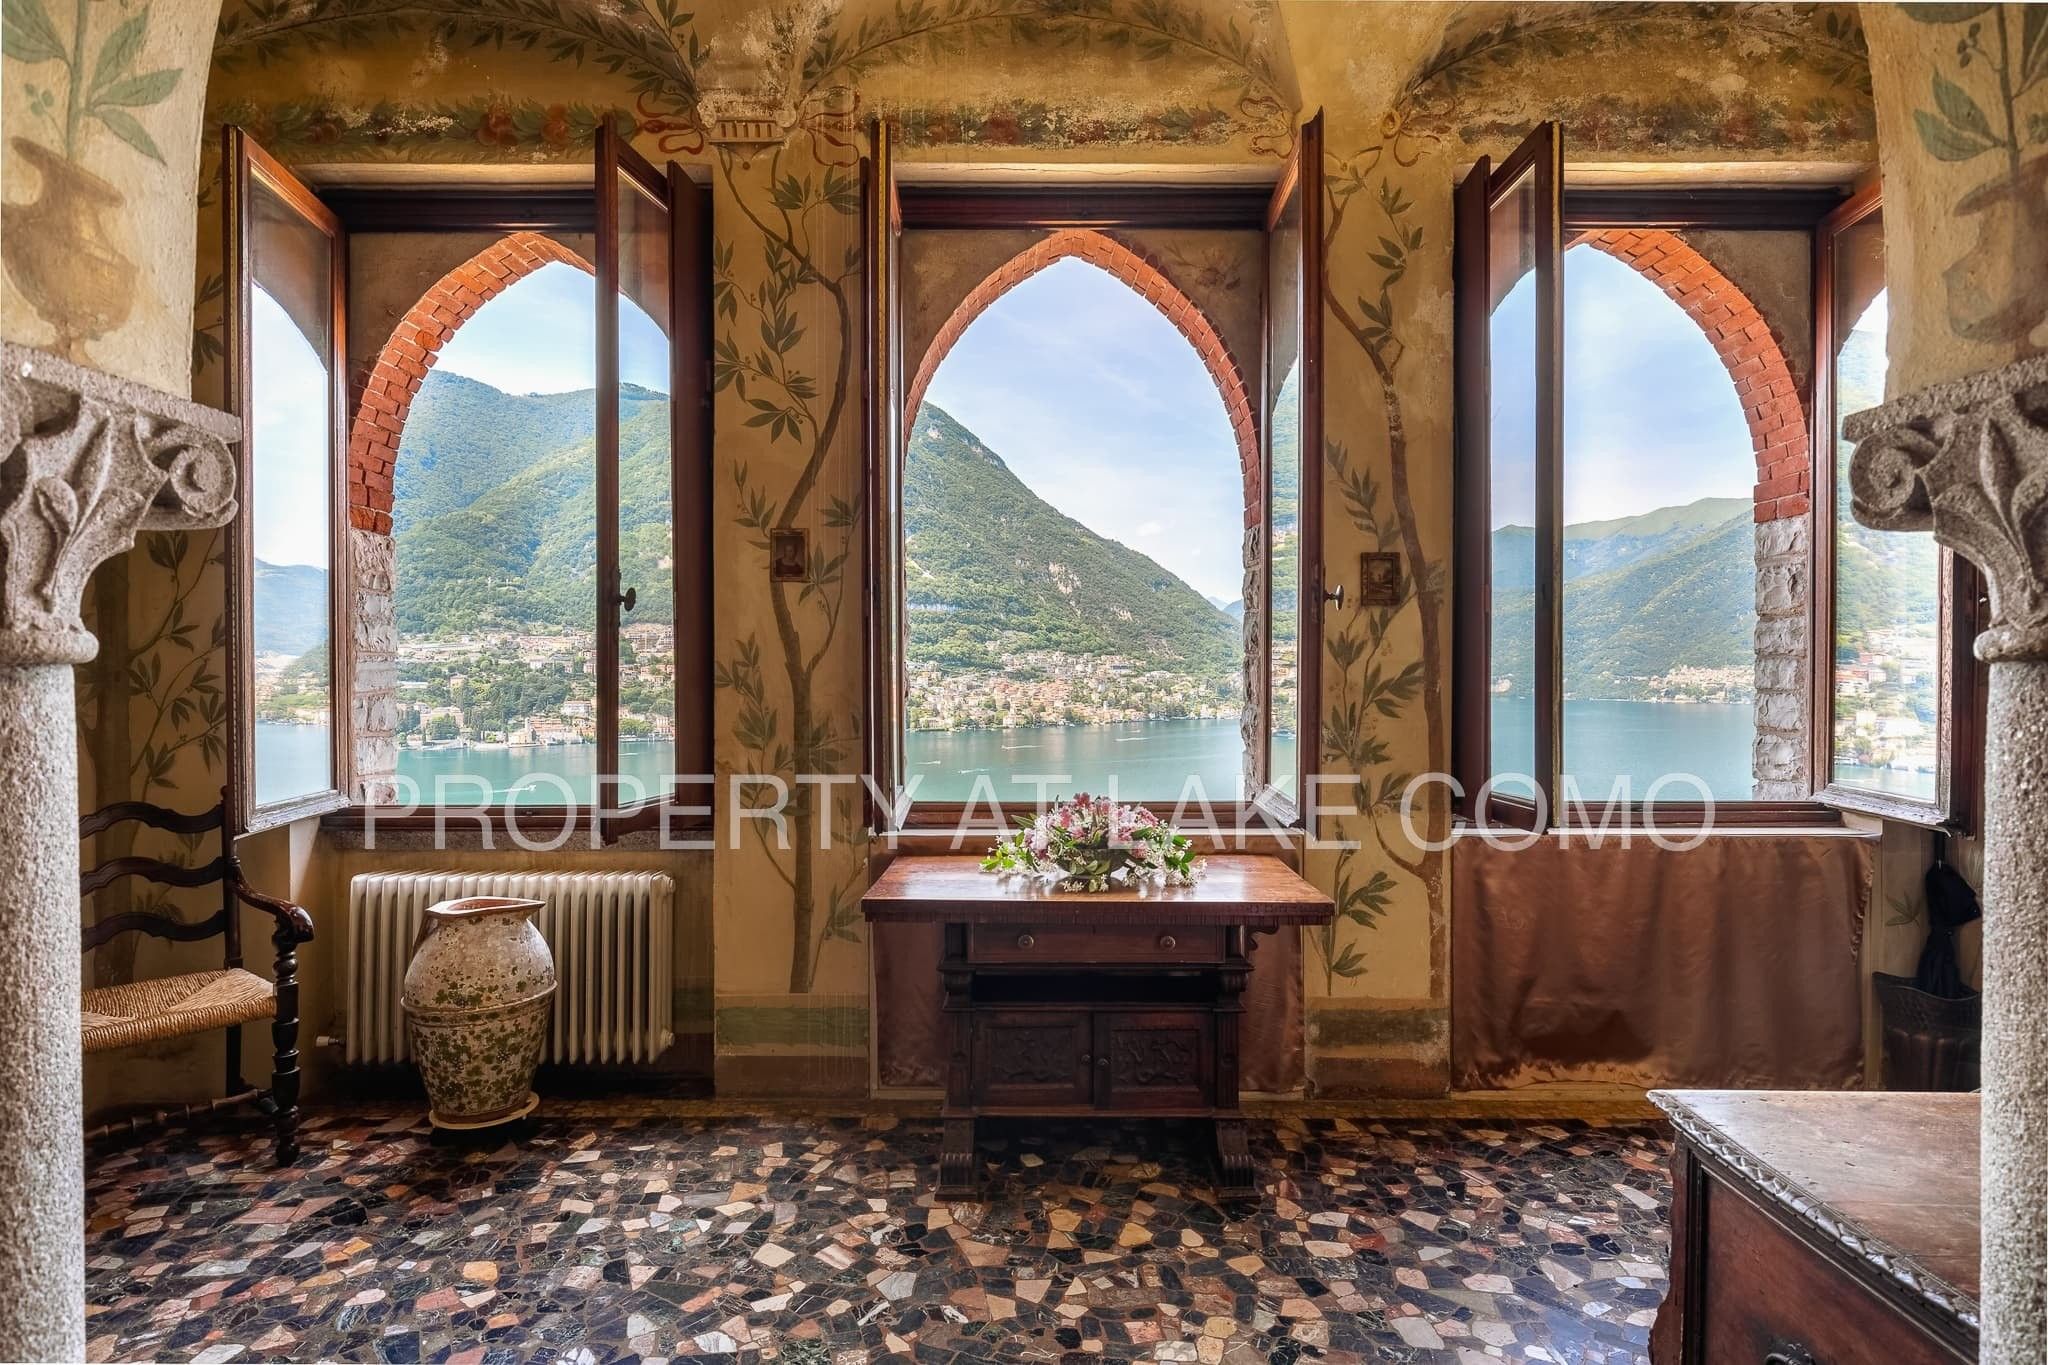 Immagini Villa Matilde/Il Castello - Magnifica villa d'epoca a Torno sul Lago di Como